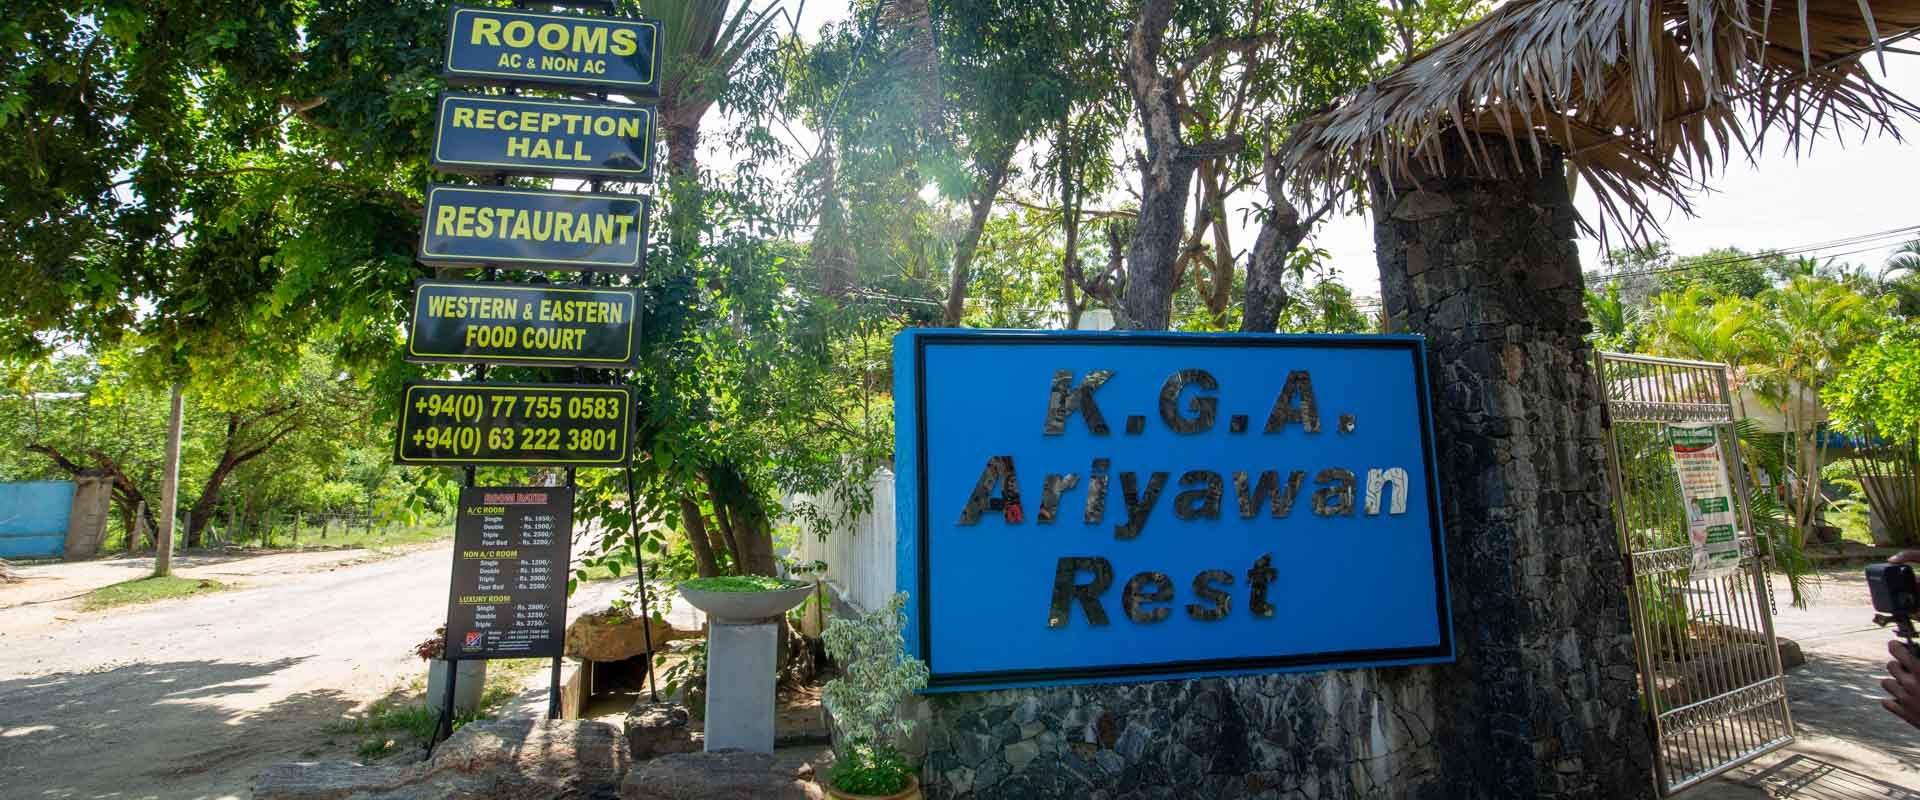 Ariyawan Rest - Gateway to East